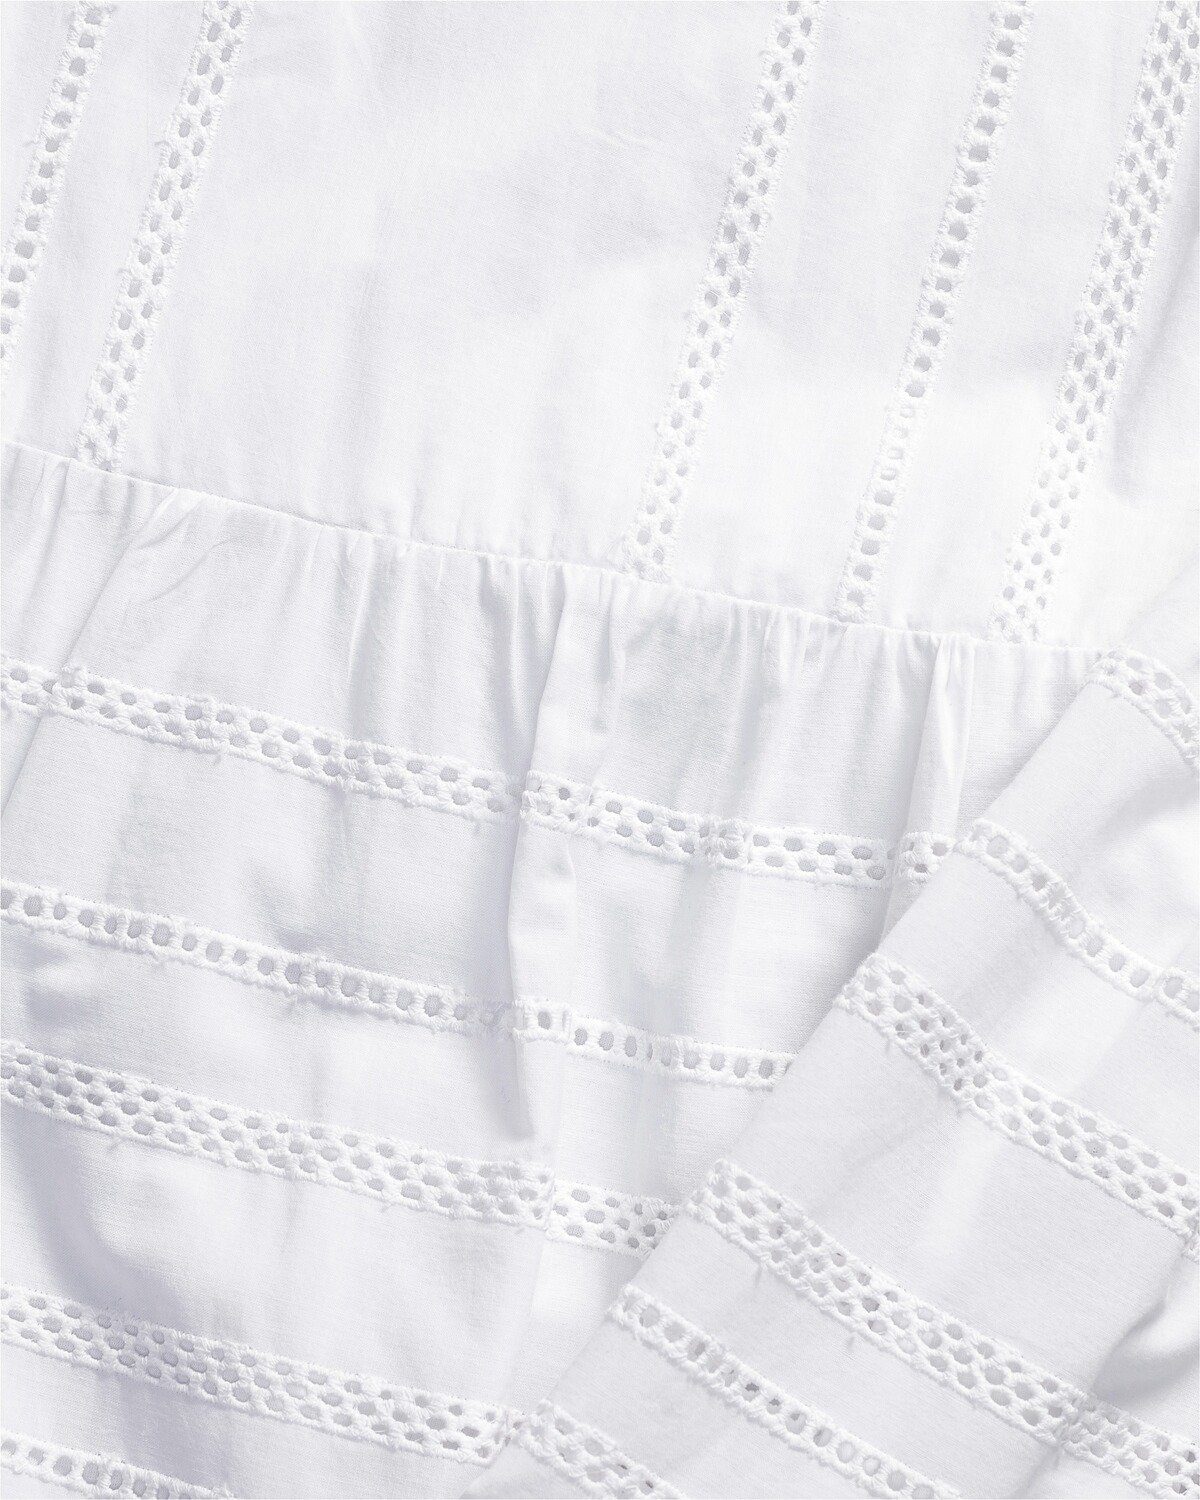 Reitmayer Trachtenkleid Madeira-Kleid mit Stufen Weiß